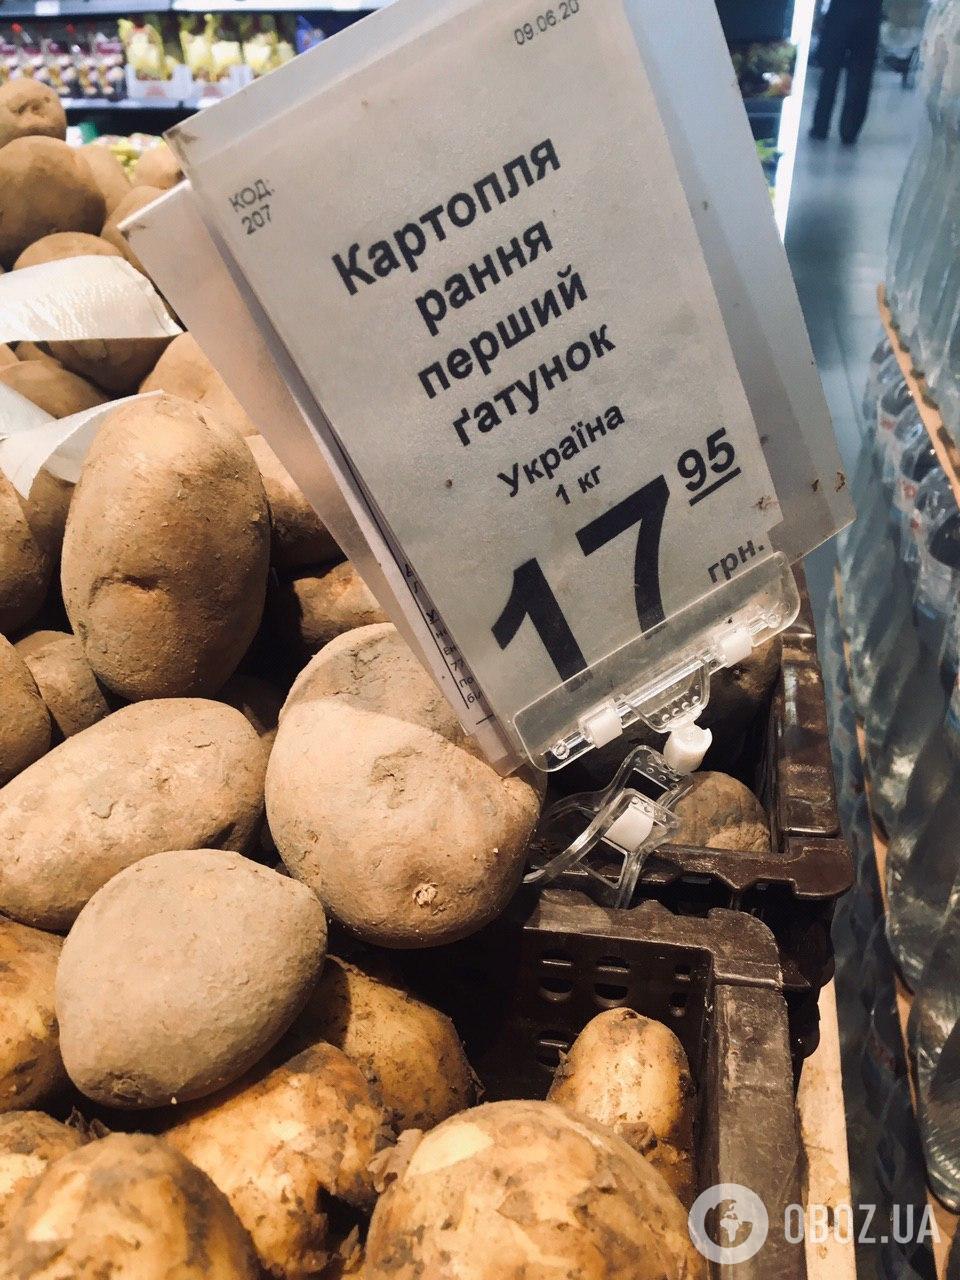 Ранний картофель - немного дороже